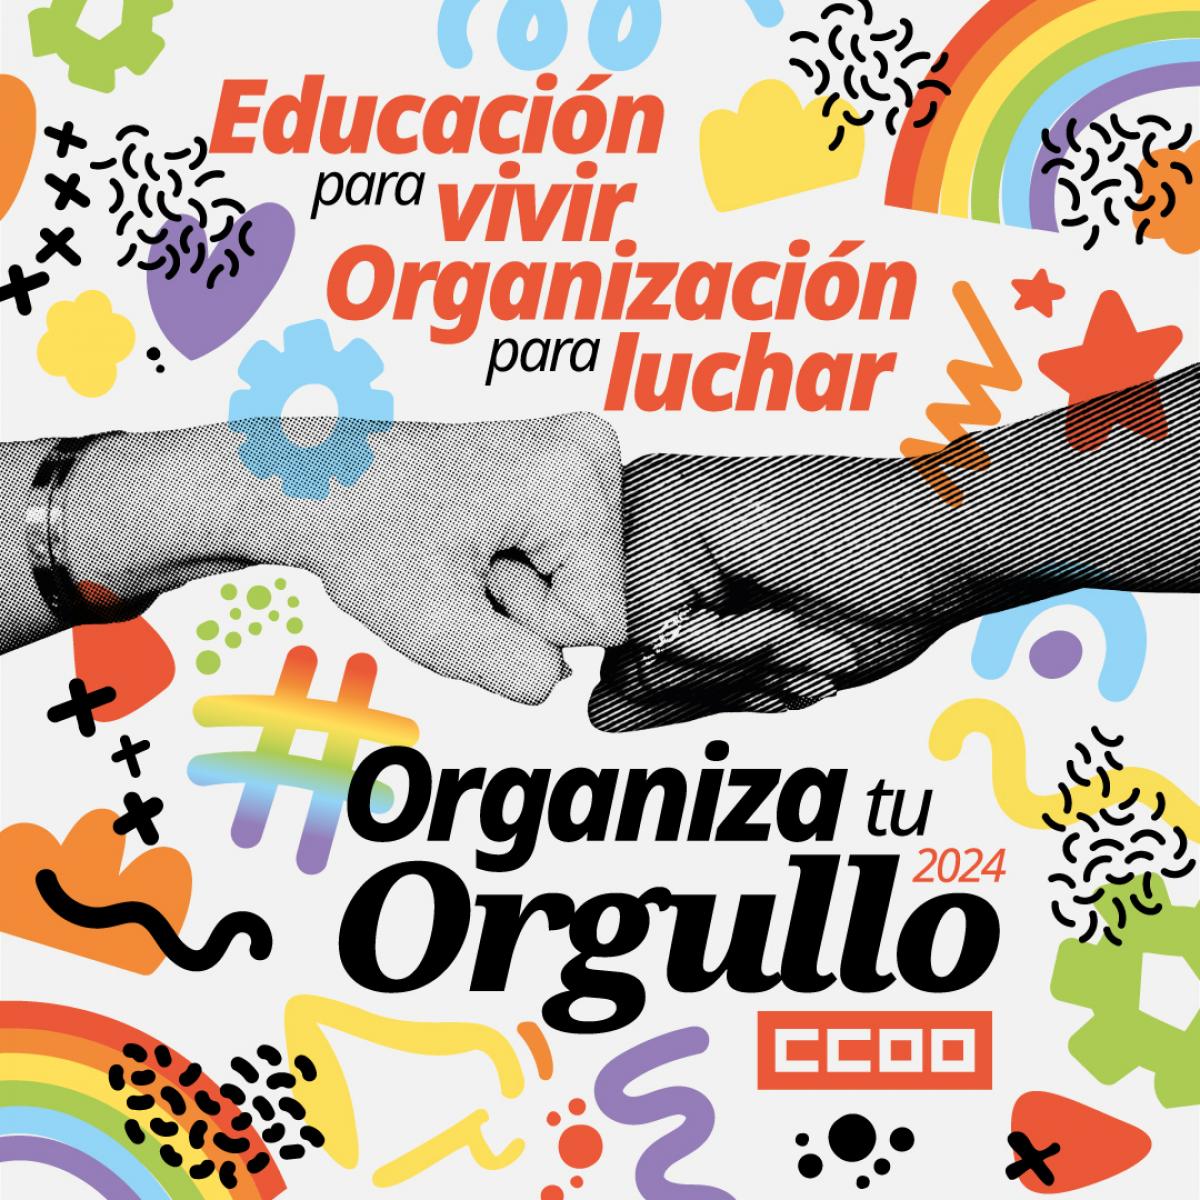 #OrganizaTuOrgullo